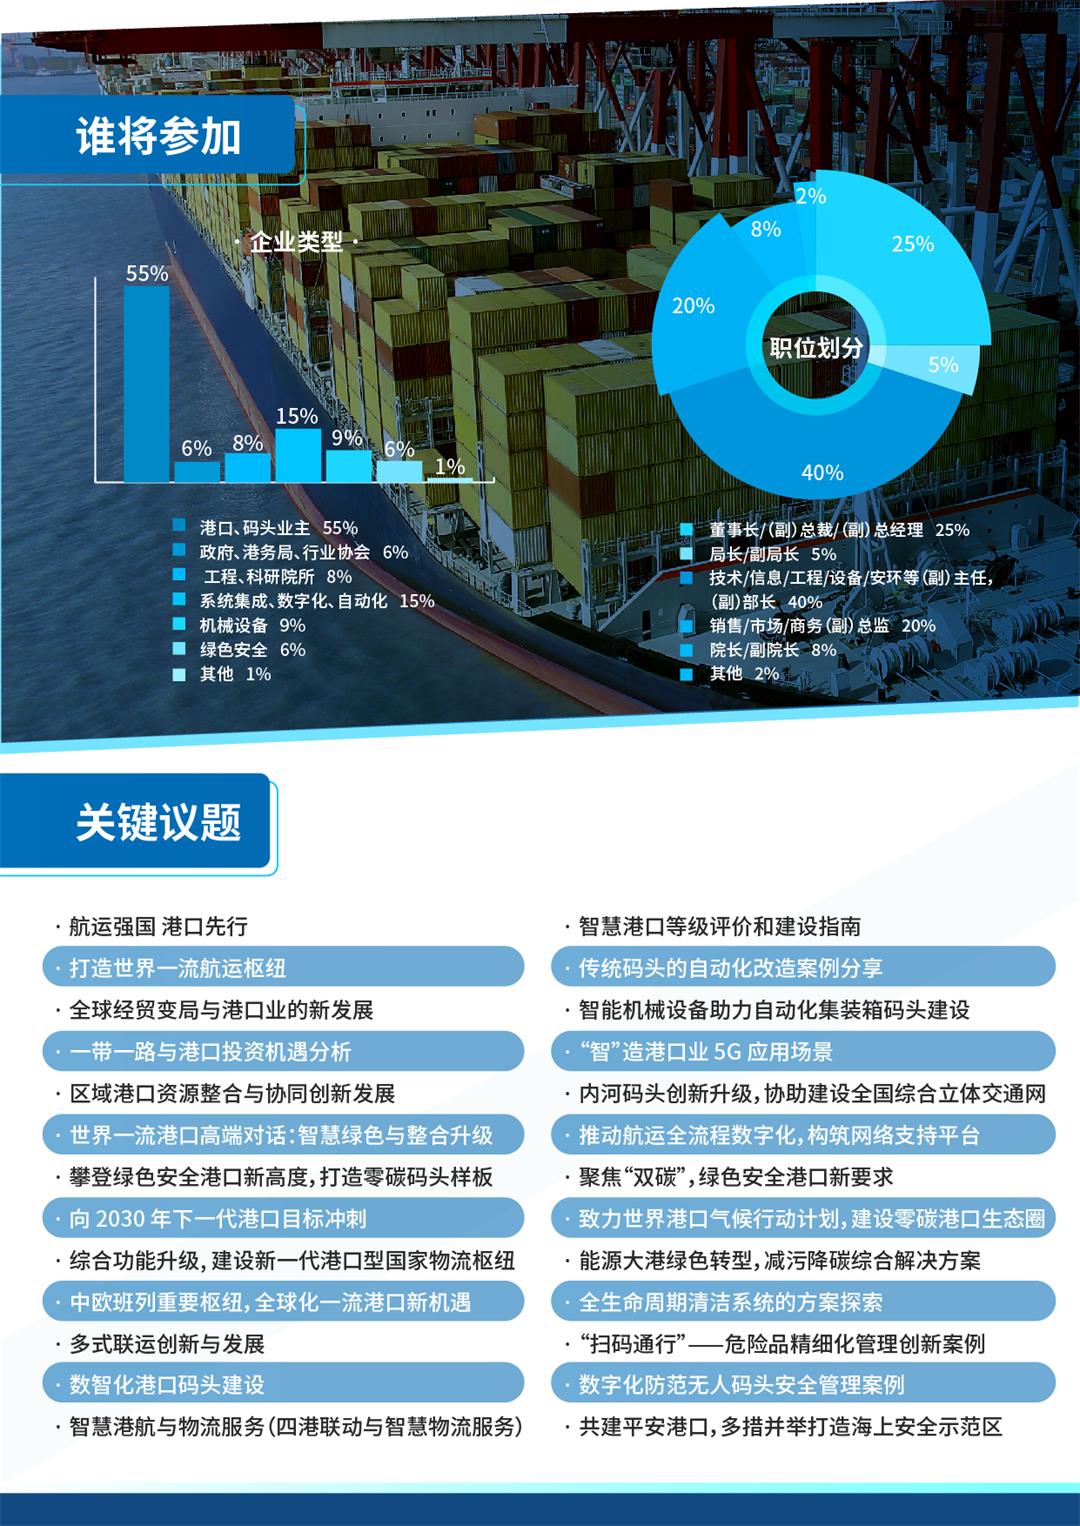 2022第九届亚太港口科技峰会暨航运科技领导者大会